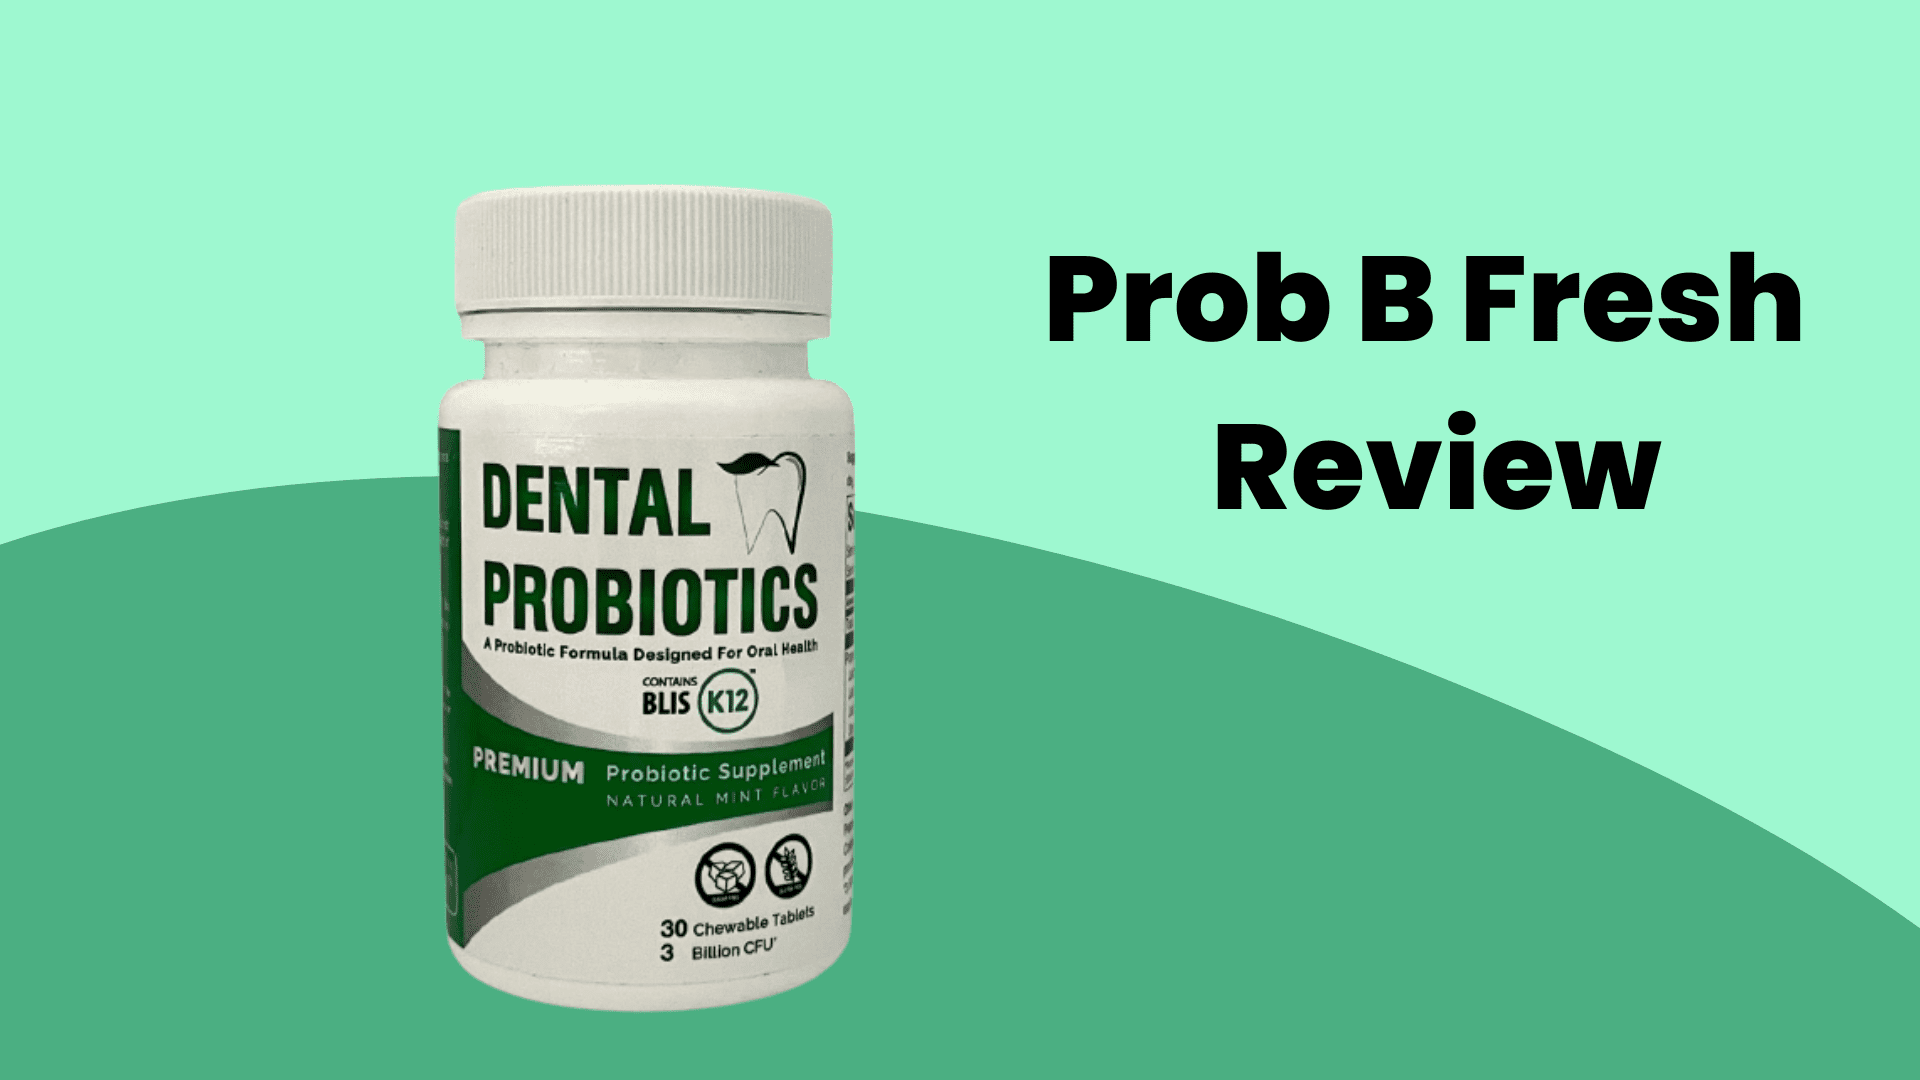 Pro B Fresh Dental Probiotics Supplement on left side